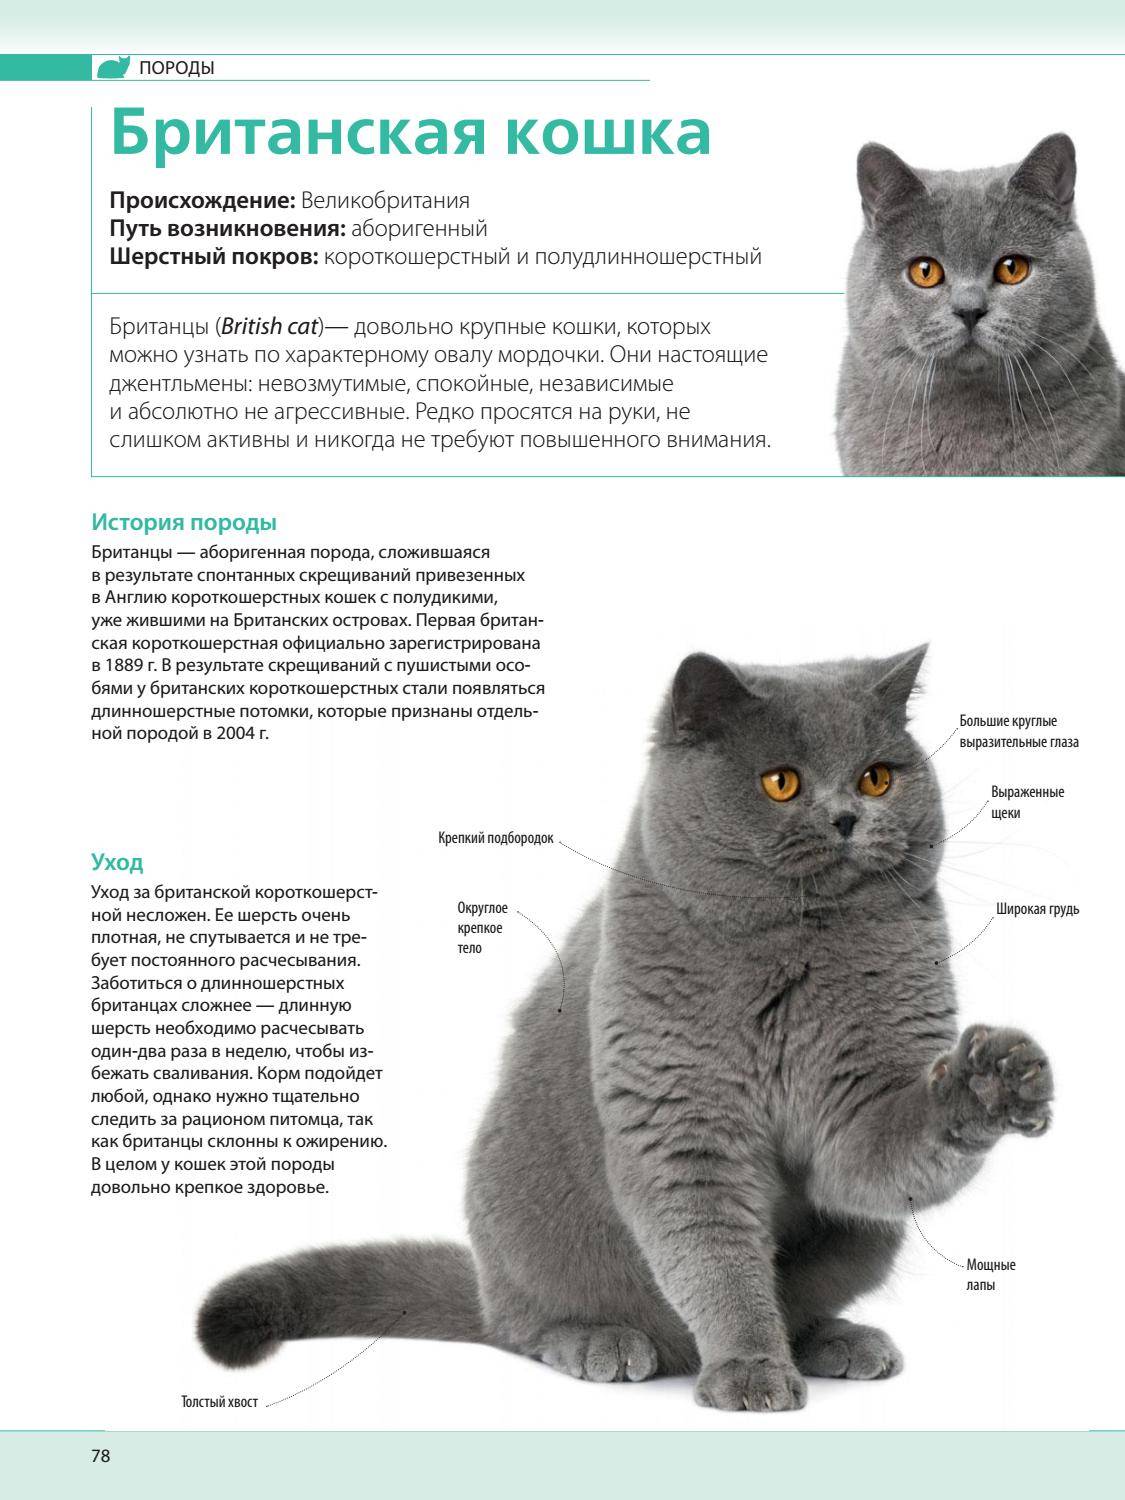 Короткошерстная британская кошка: описание породы, стандарт, характер, воспитание и уход